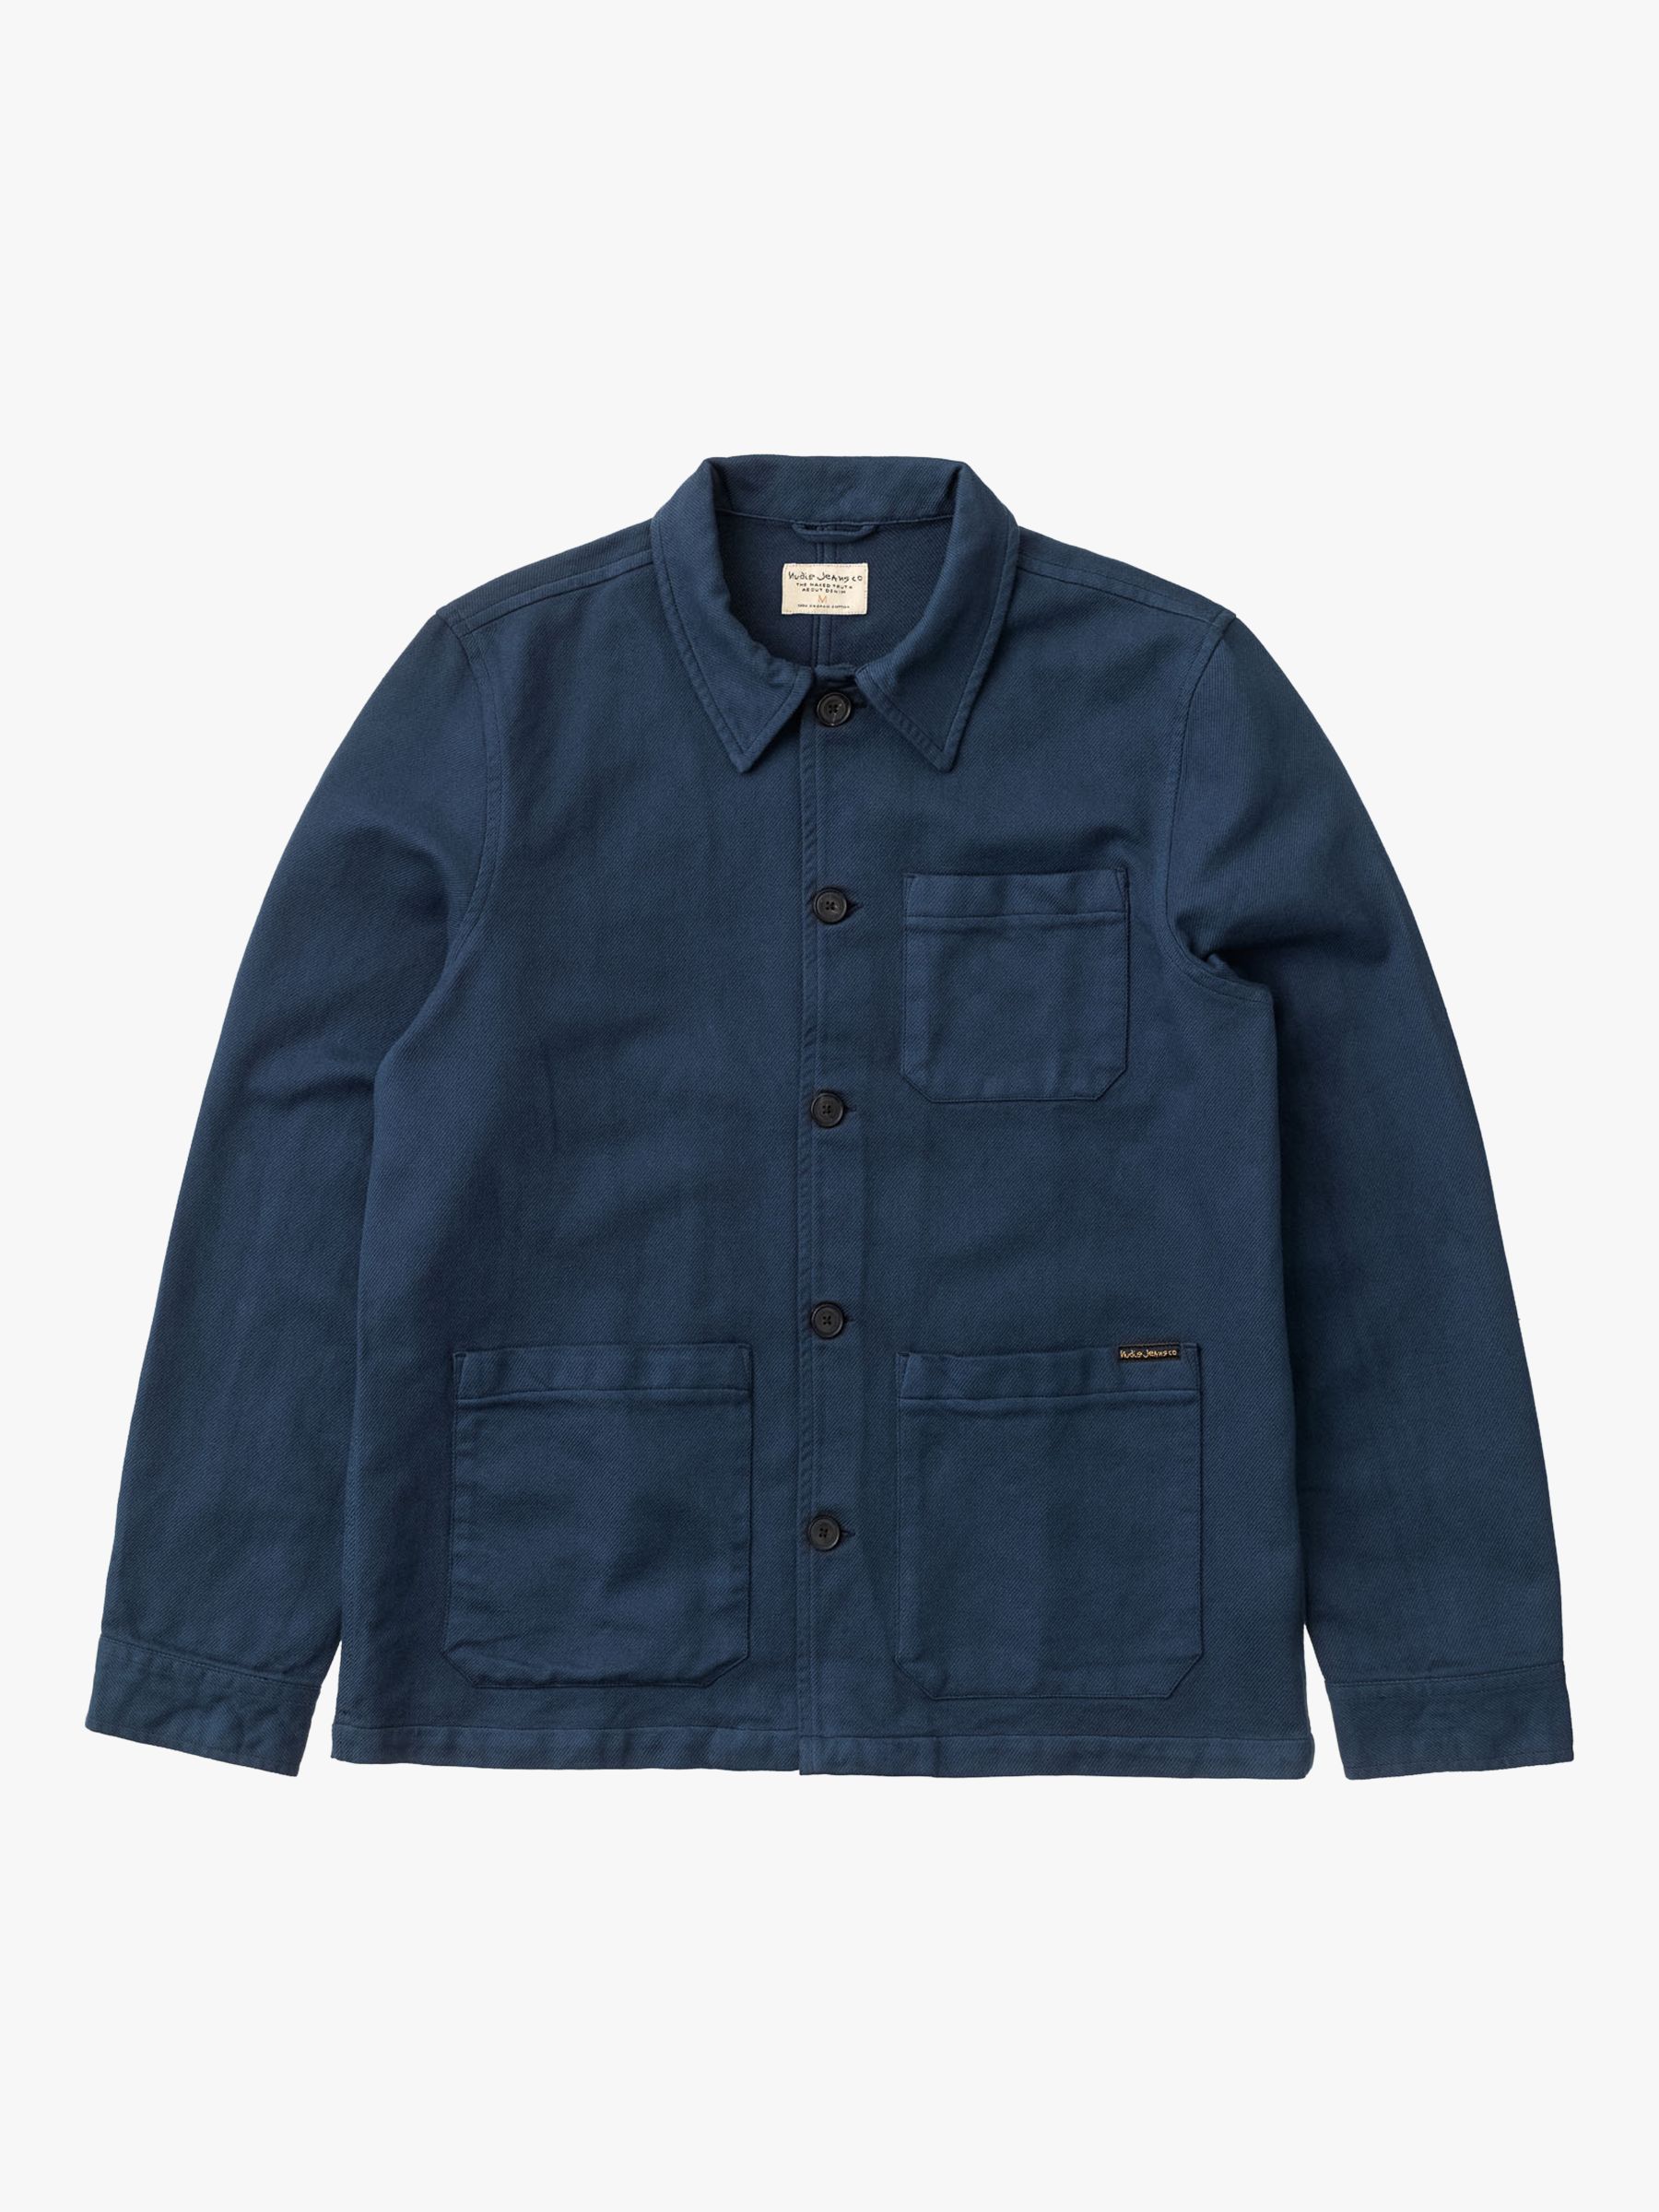 Nudie Jeans Barney Worker Jacket, Denim Blue